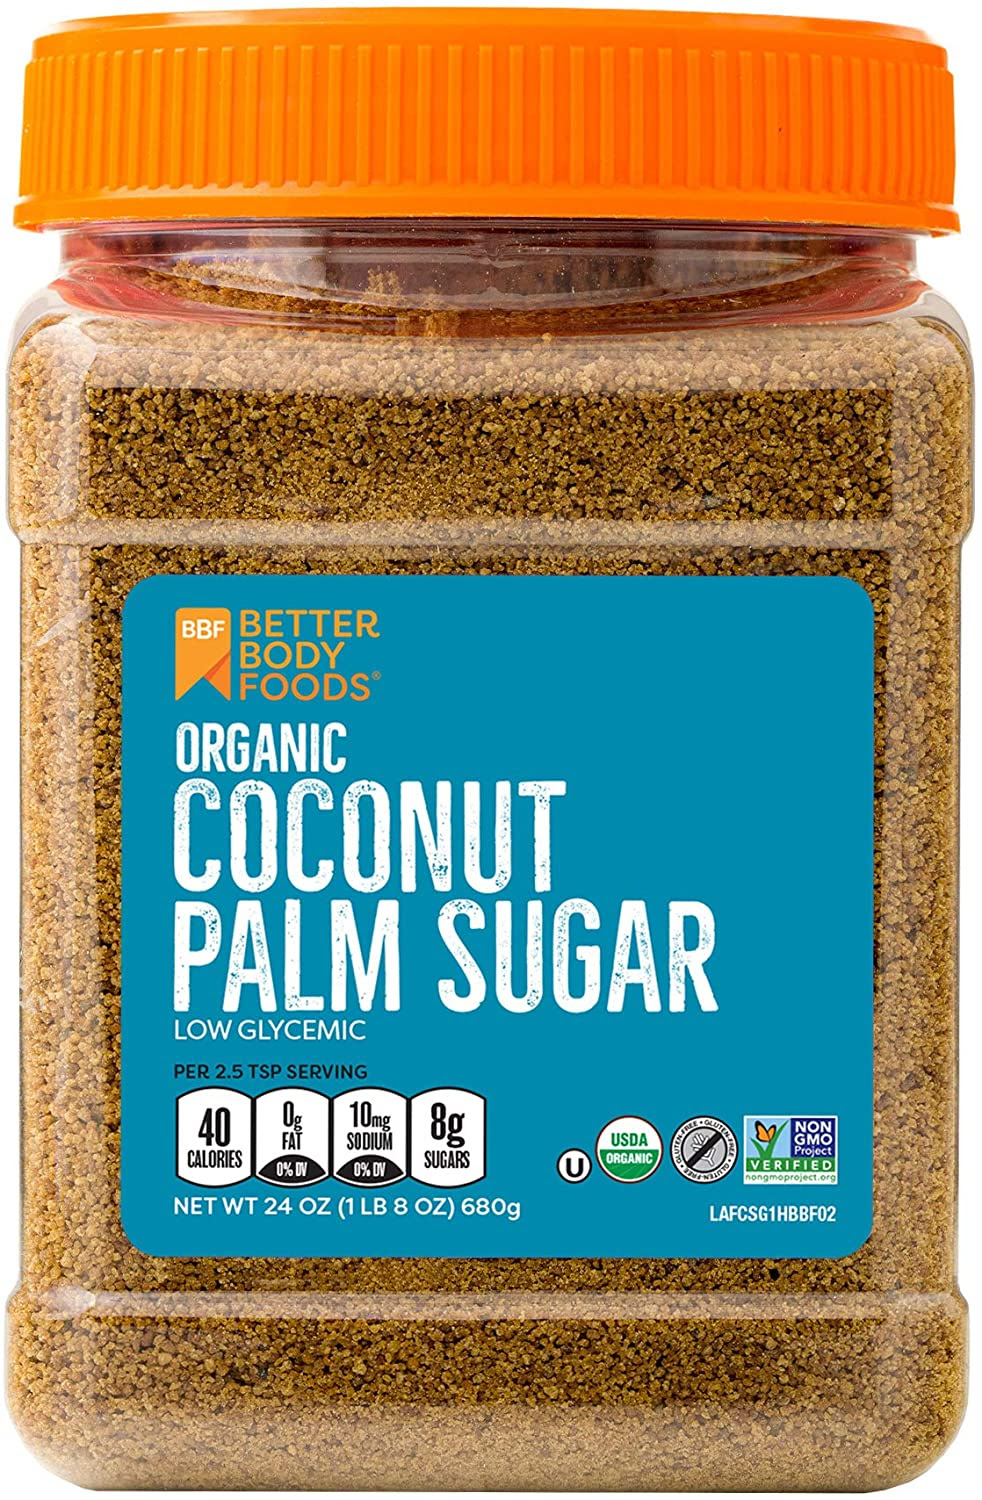 Organic Coconut Palm Sugar, $5.98